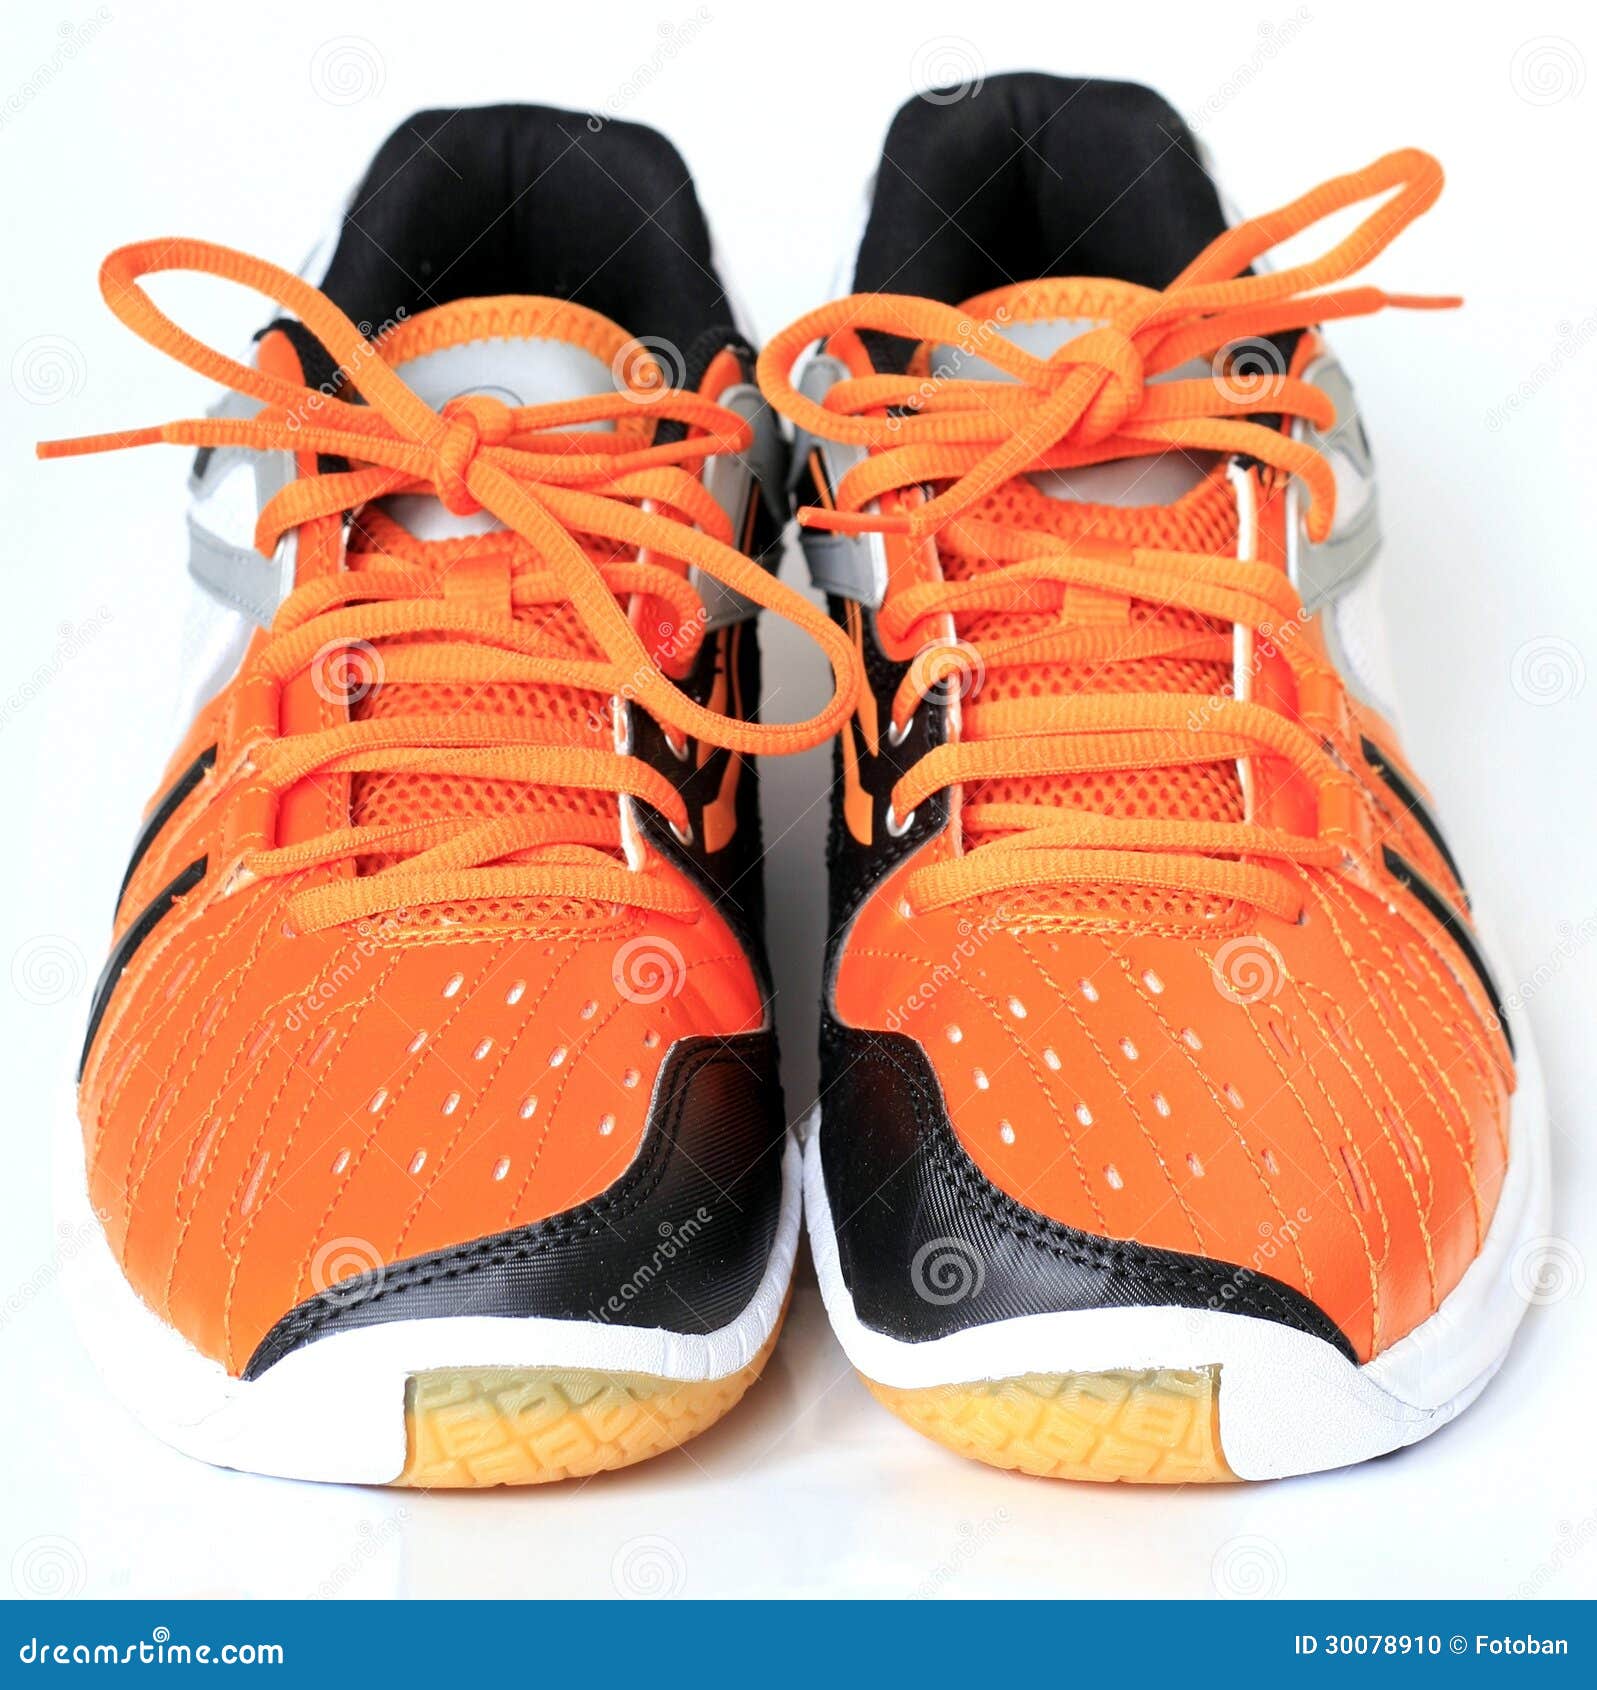 Sports shoes stock photo. Image of feet, orange, close - 30078910